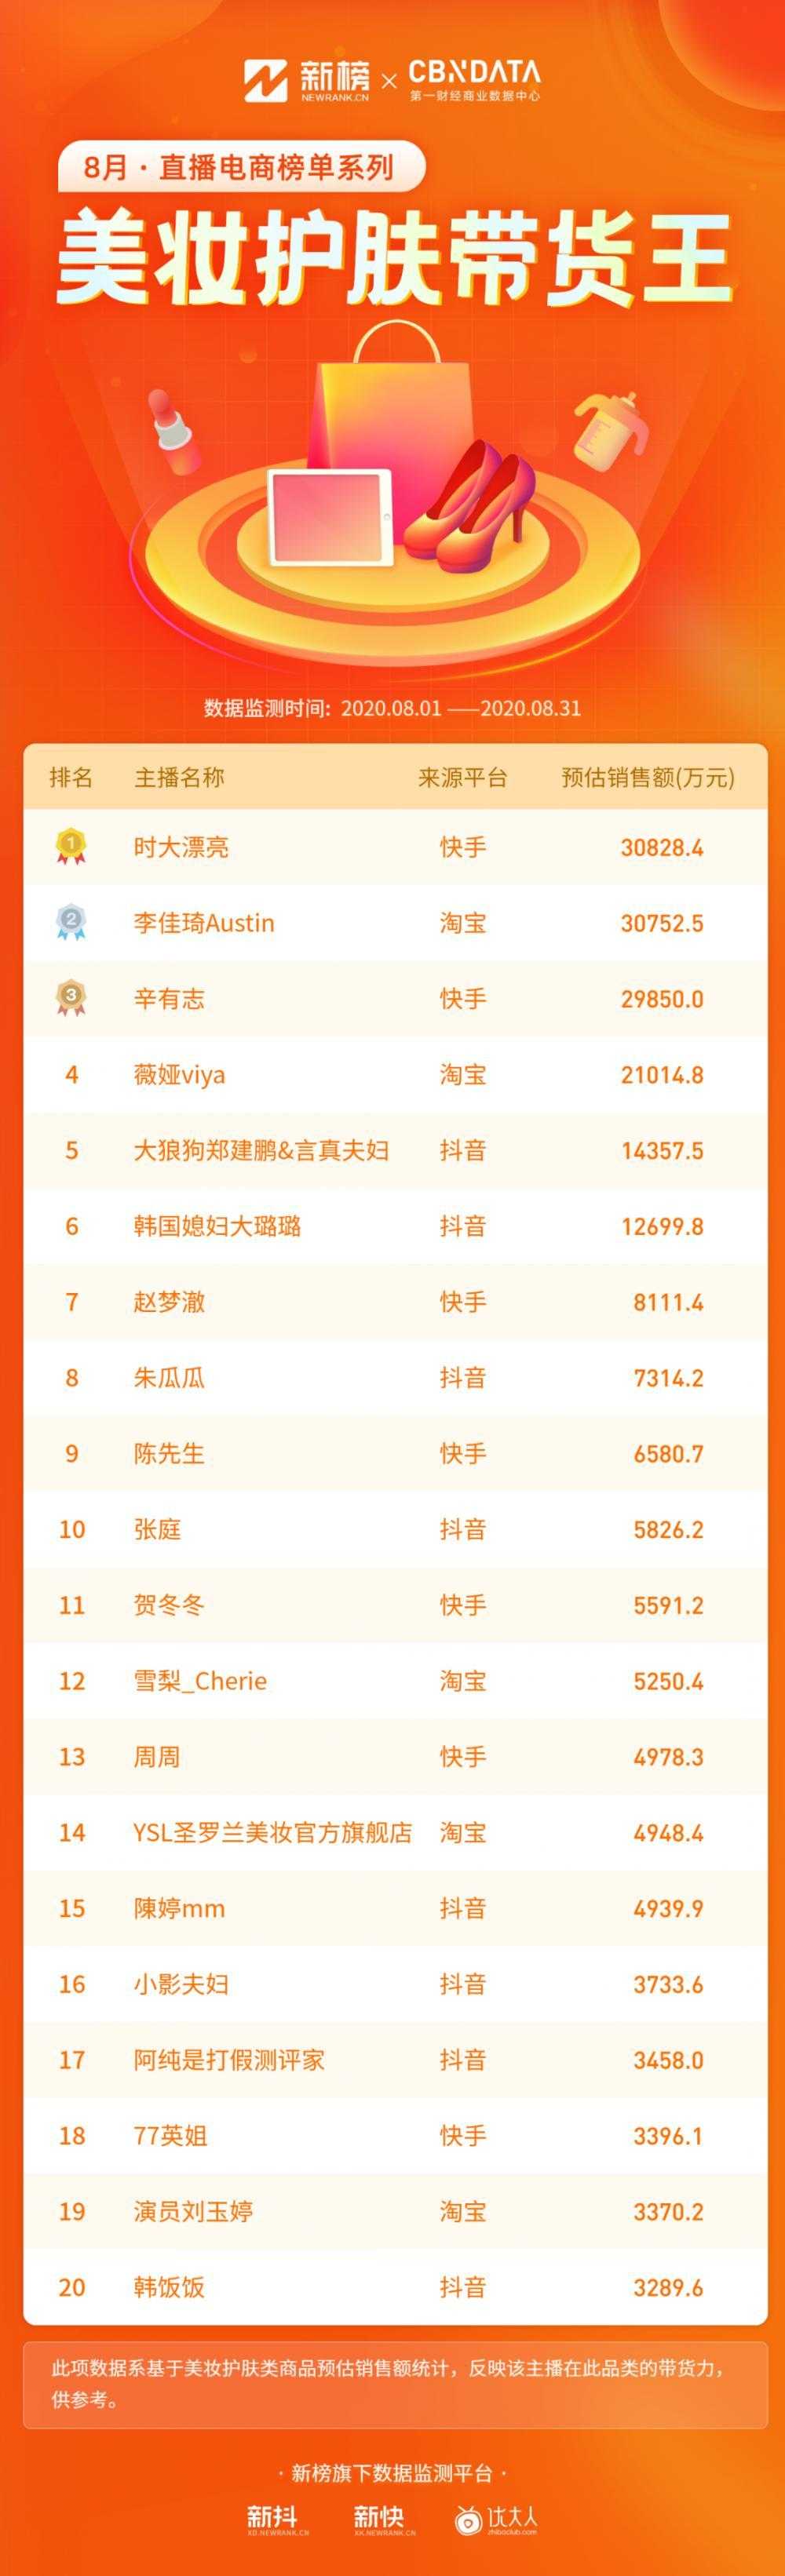 辛巴超越李佳琦！TOP50主播中抖音占比最高 | 8月<a href='https://www.zhouxiaohui.cn/duanshipin/
' target='_blank'>直播电商</a>榜单重磅首发-第10张图片-周小辉博客